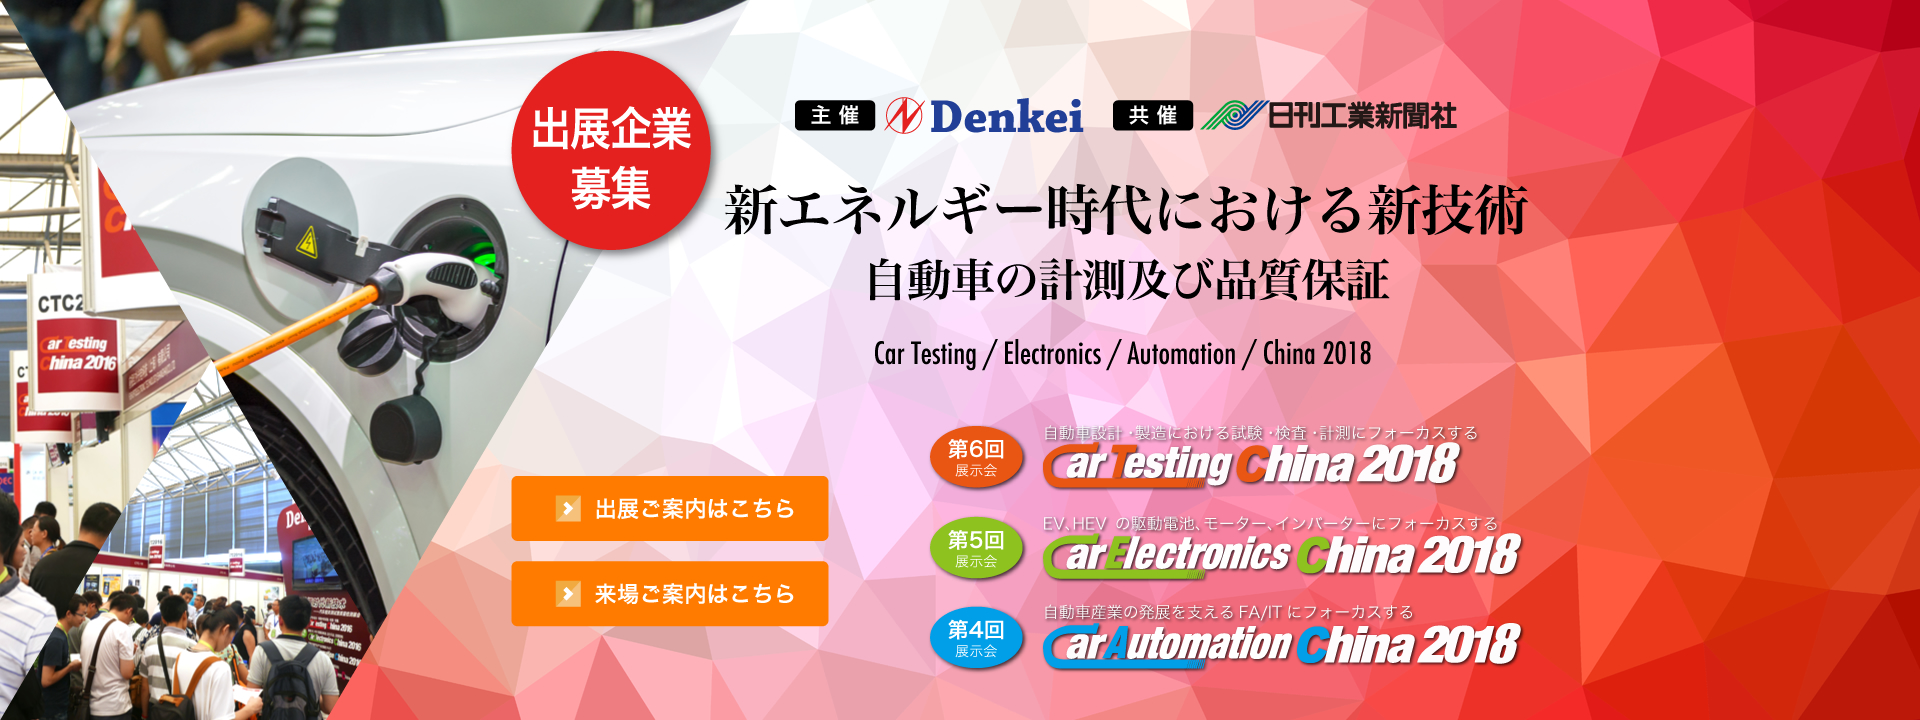 新エネルギー時代における新技術、自動車の計測および品質保証「第6回Car Testing China 2018」